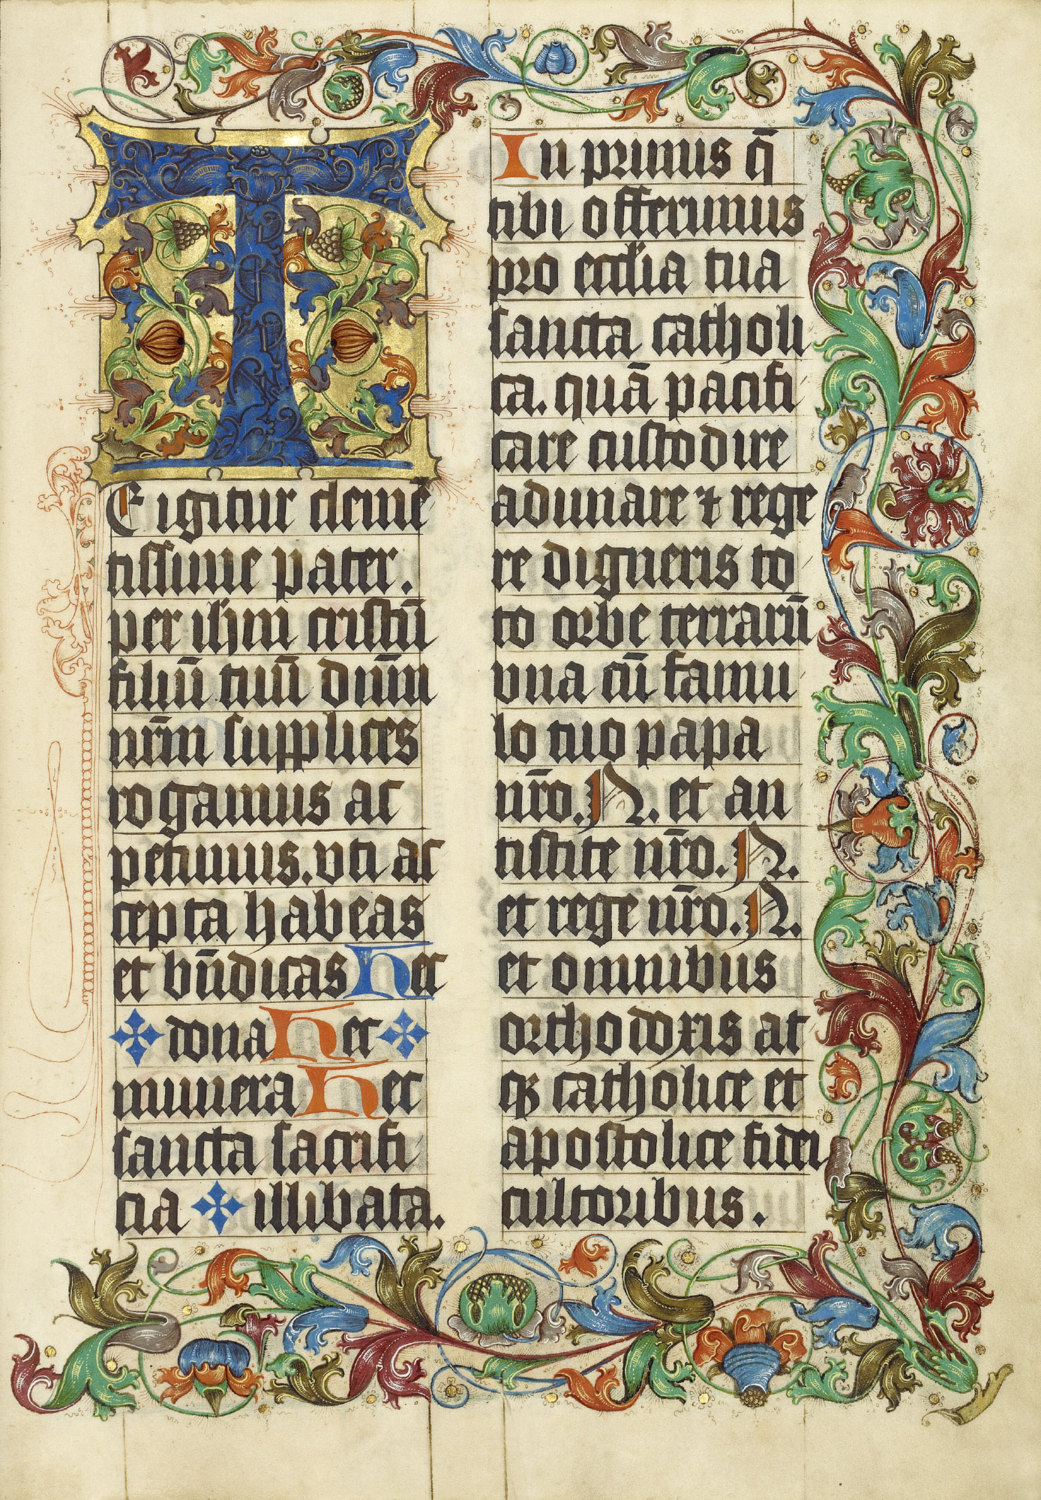 Medieval manuscripts illuminated - fasjoin